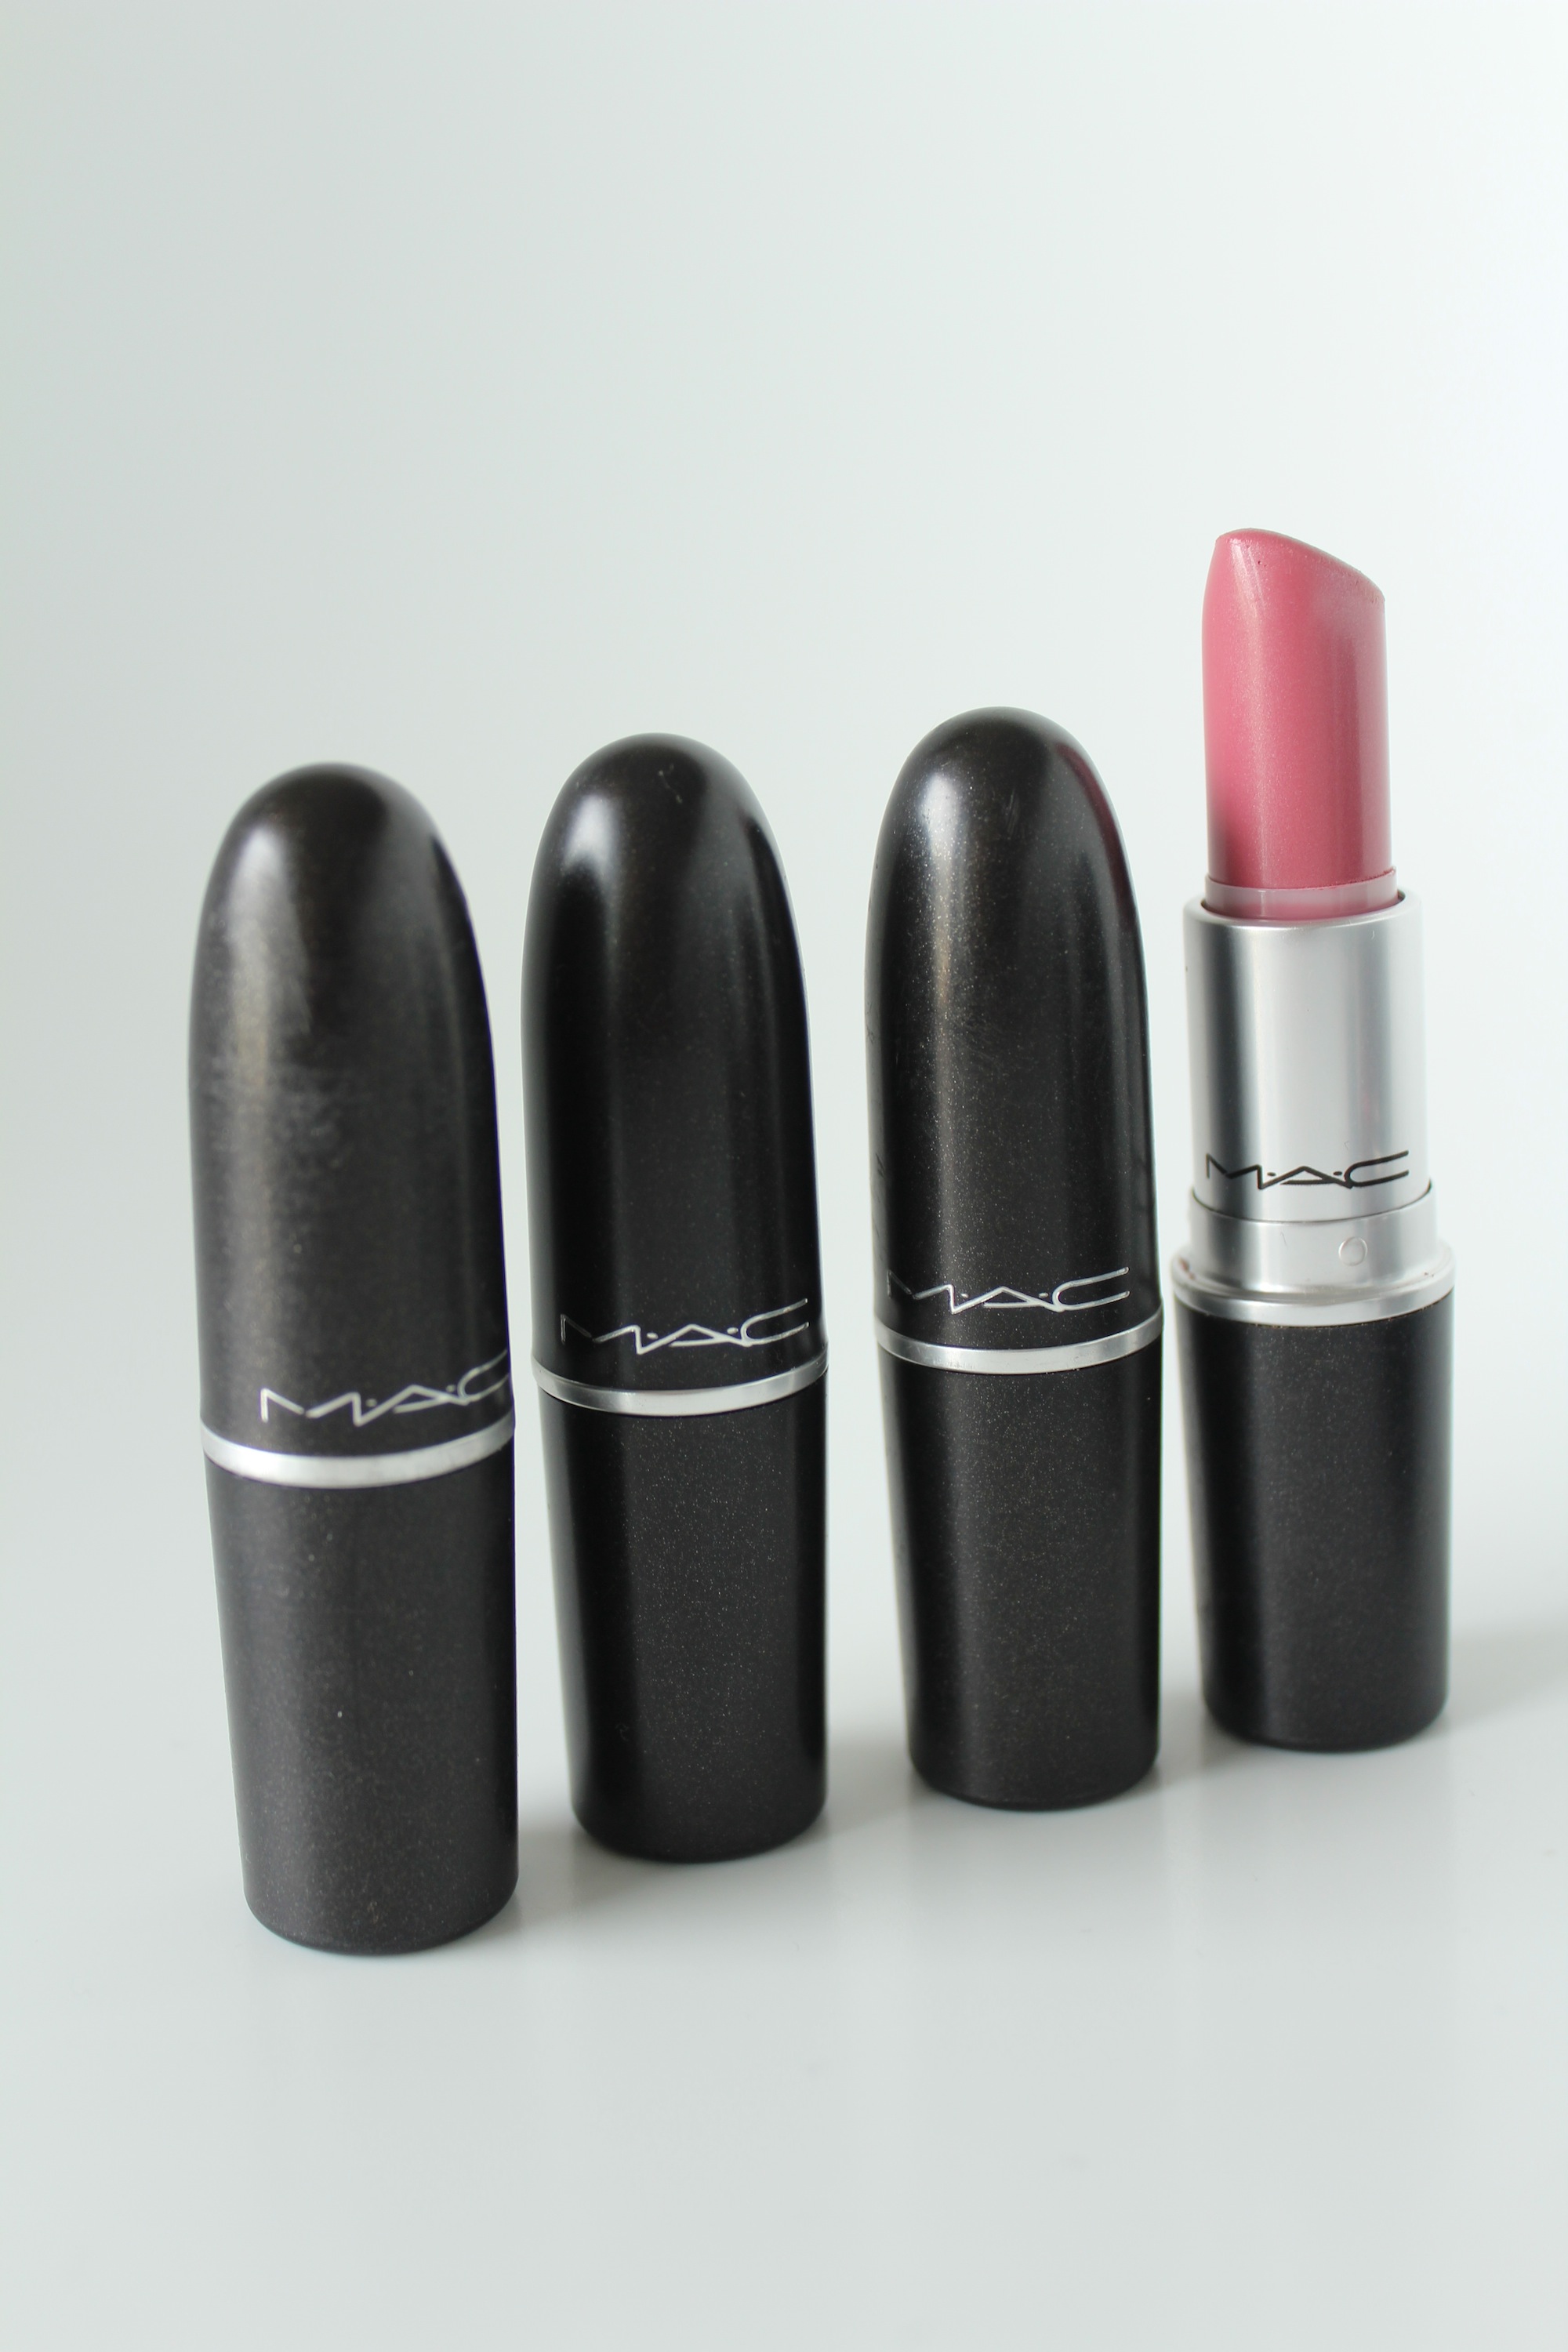 Mac Hot Gossip Lipstick